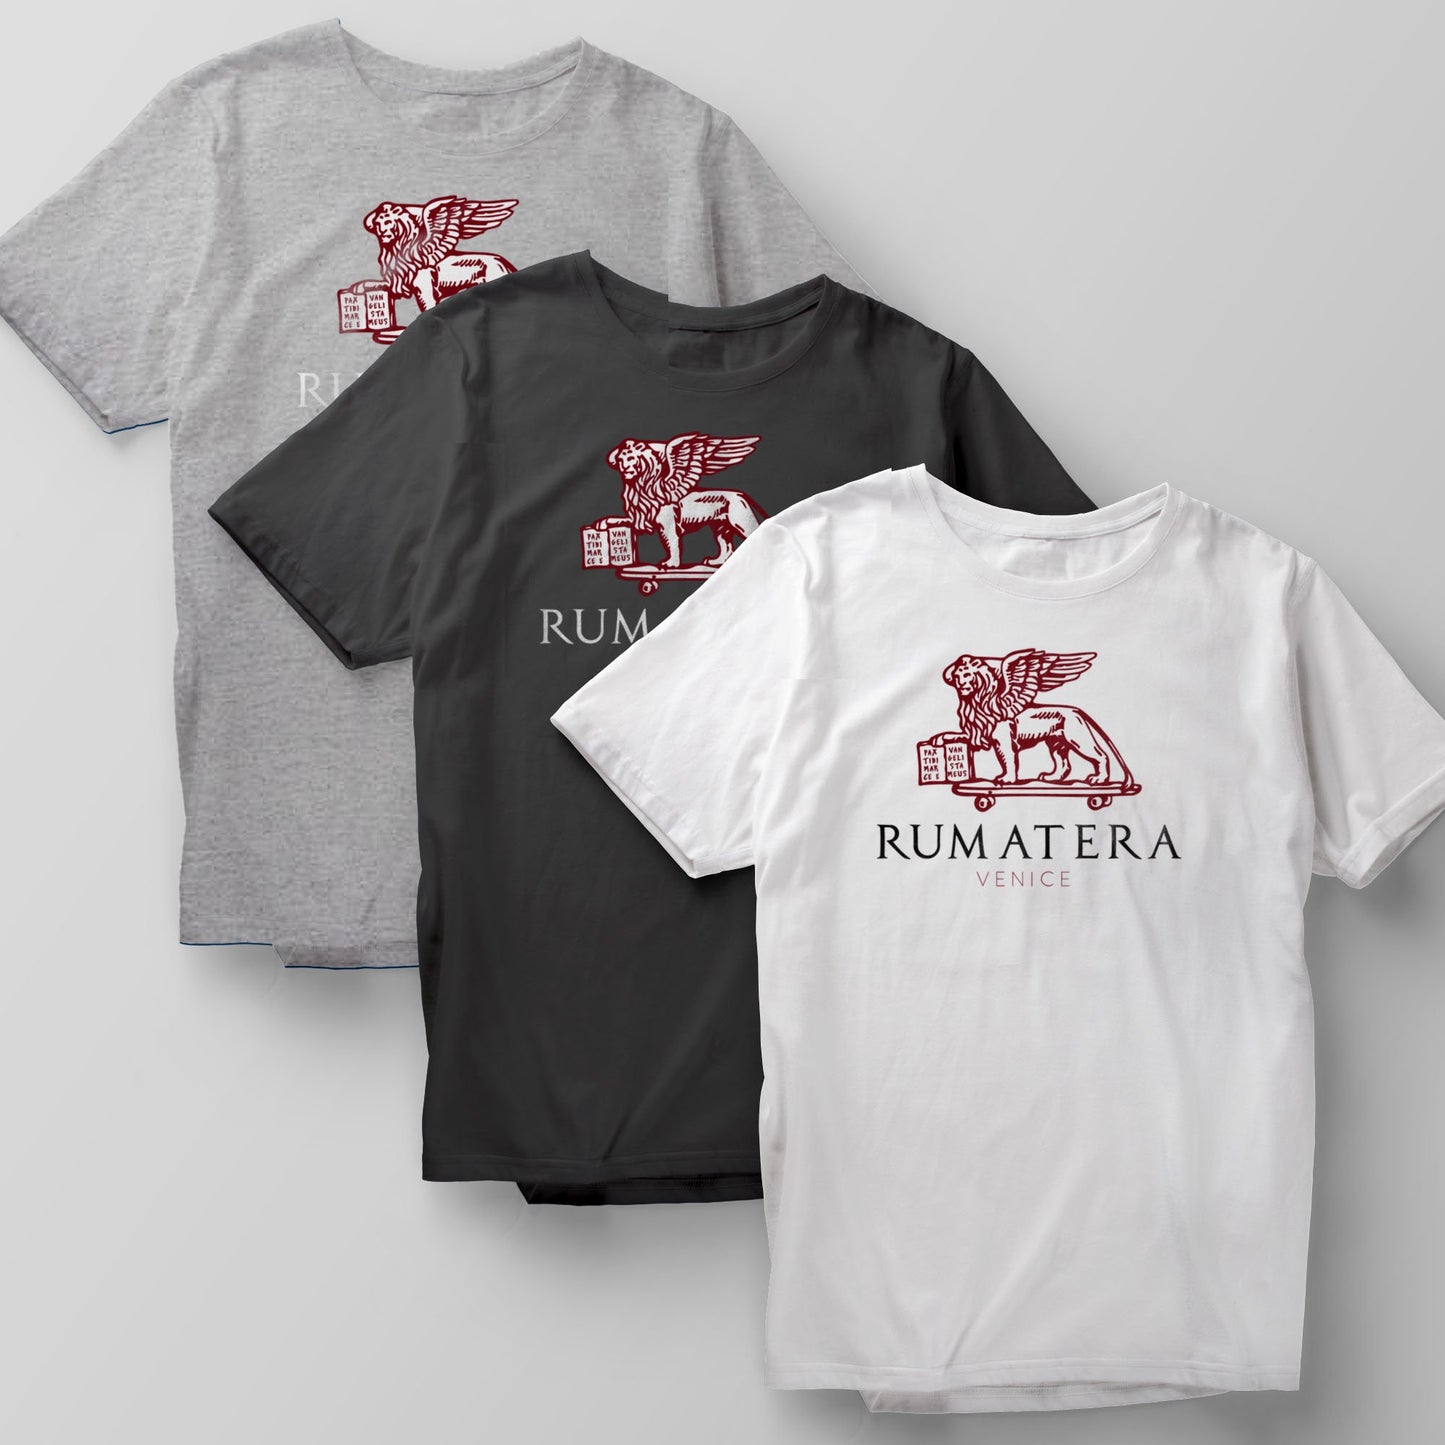 T-Shirt "Rumatera - Venice"